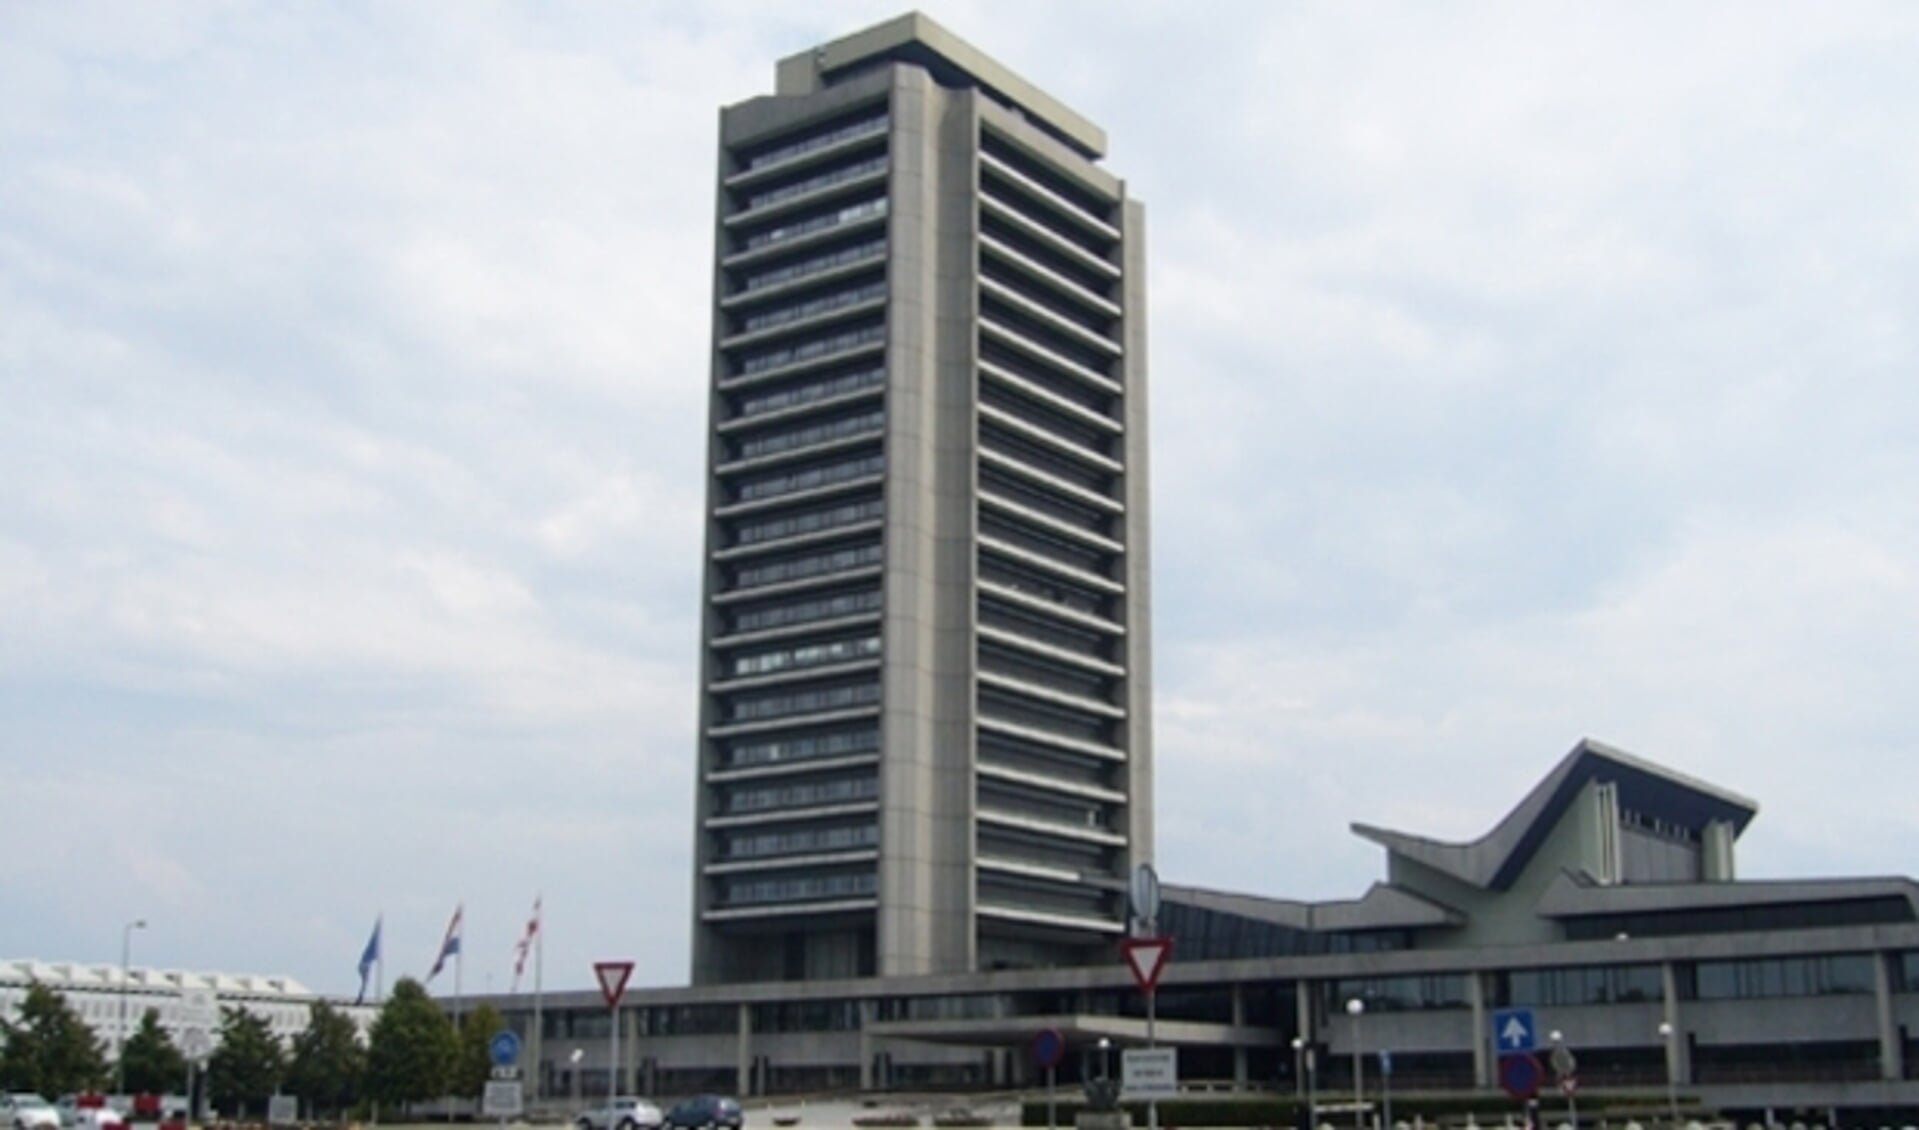 Het provinciehuis is het laatste werk van de architect Huig Maaskant die onder andere de Euromast en het Groothandelscentrum in Rotterdam tot zijn scheppingen mag rekenen. 